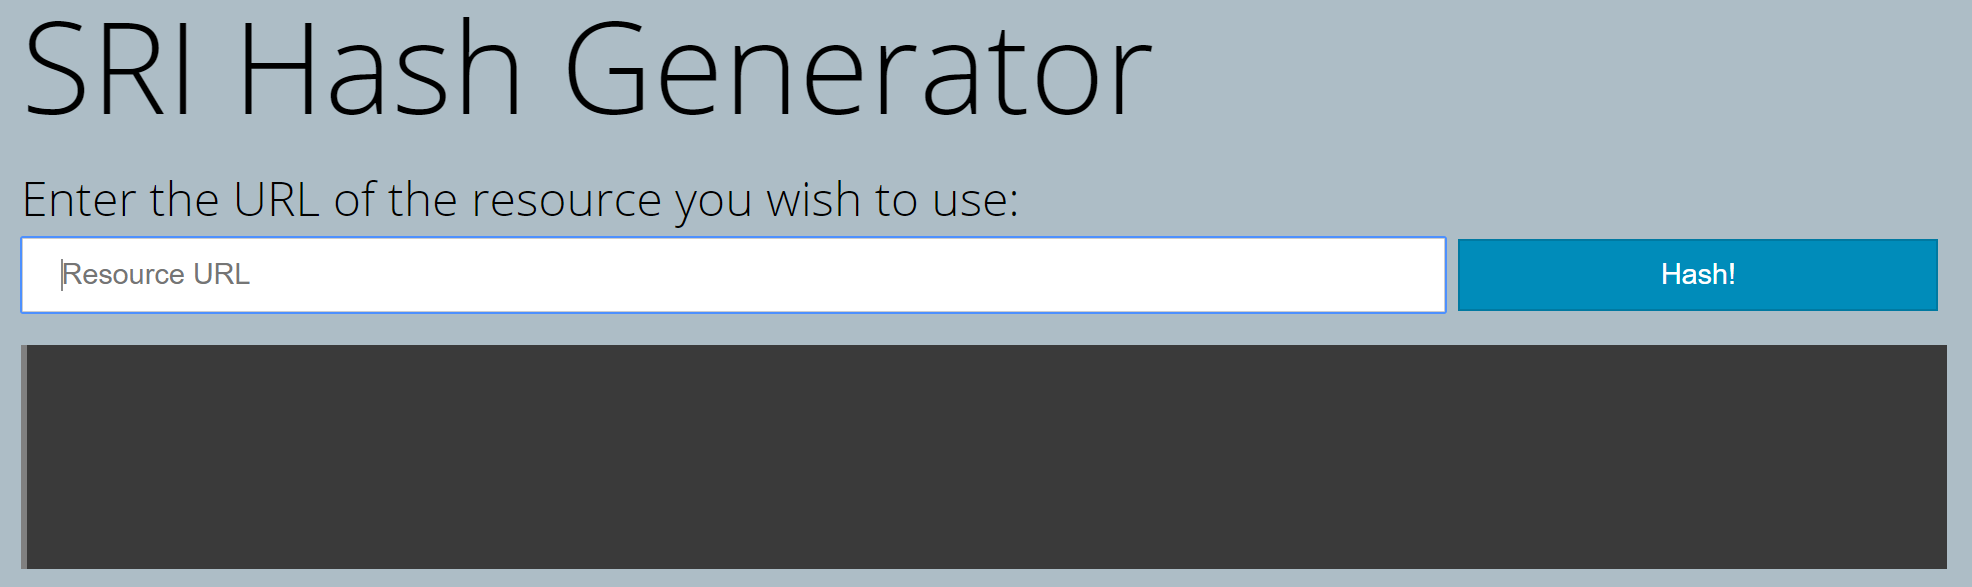 SRI Hash Generator